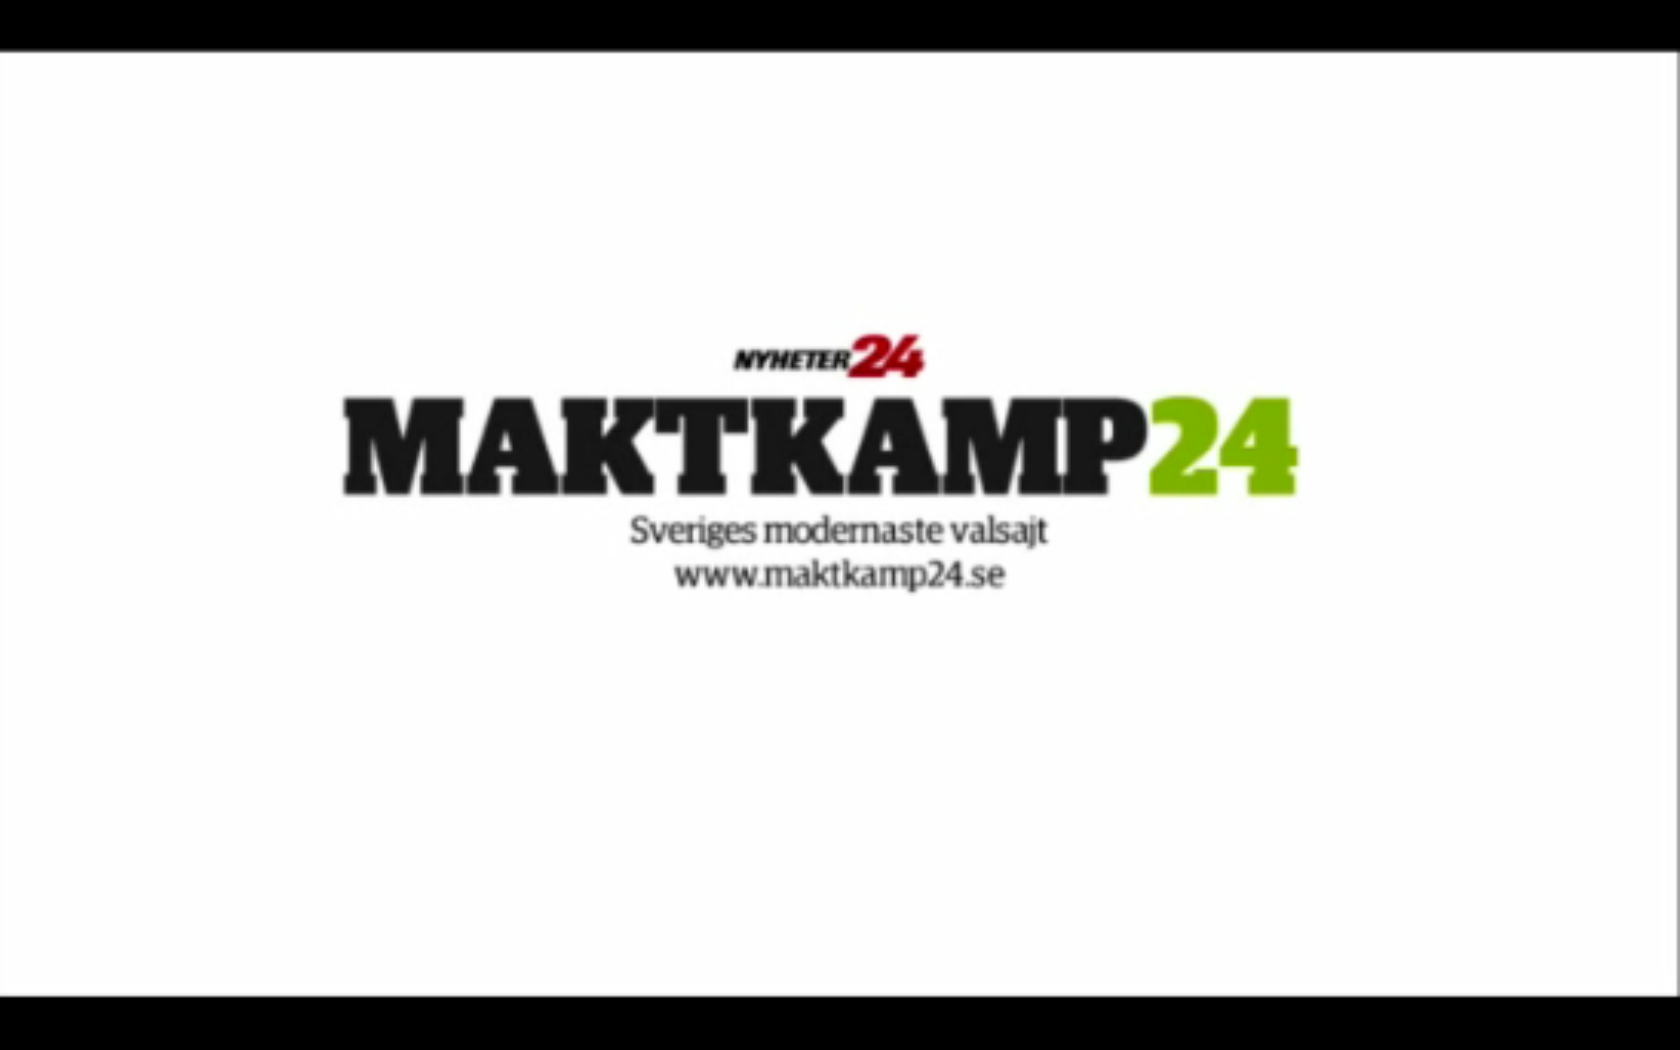 Maktkamp24, Riksdagsvalet 2010